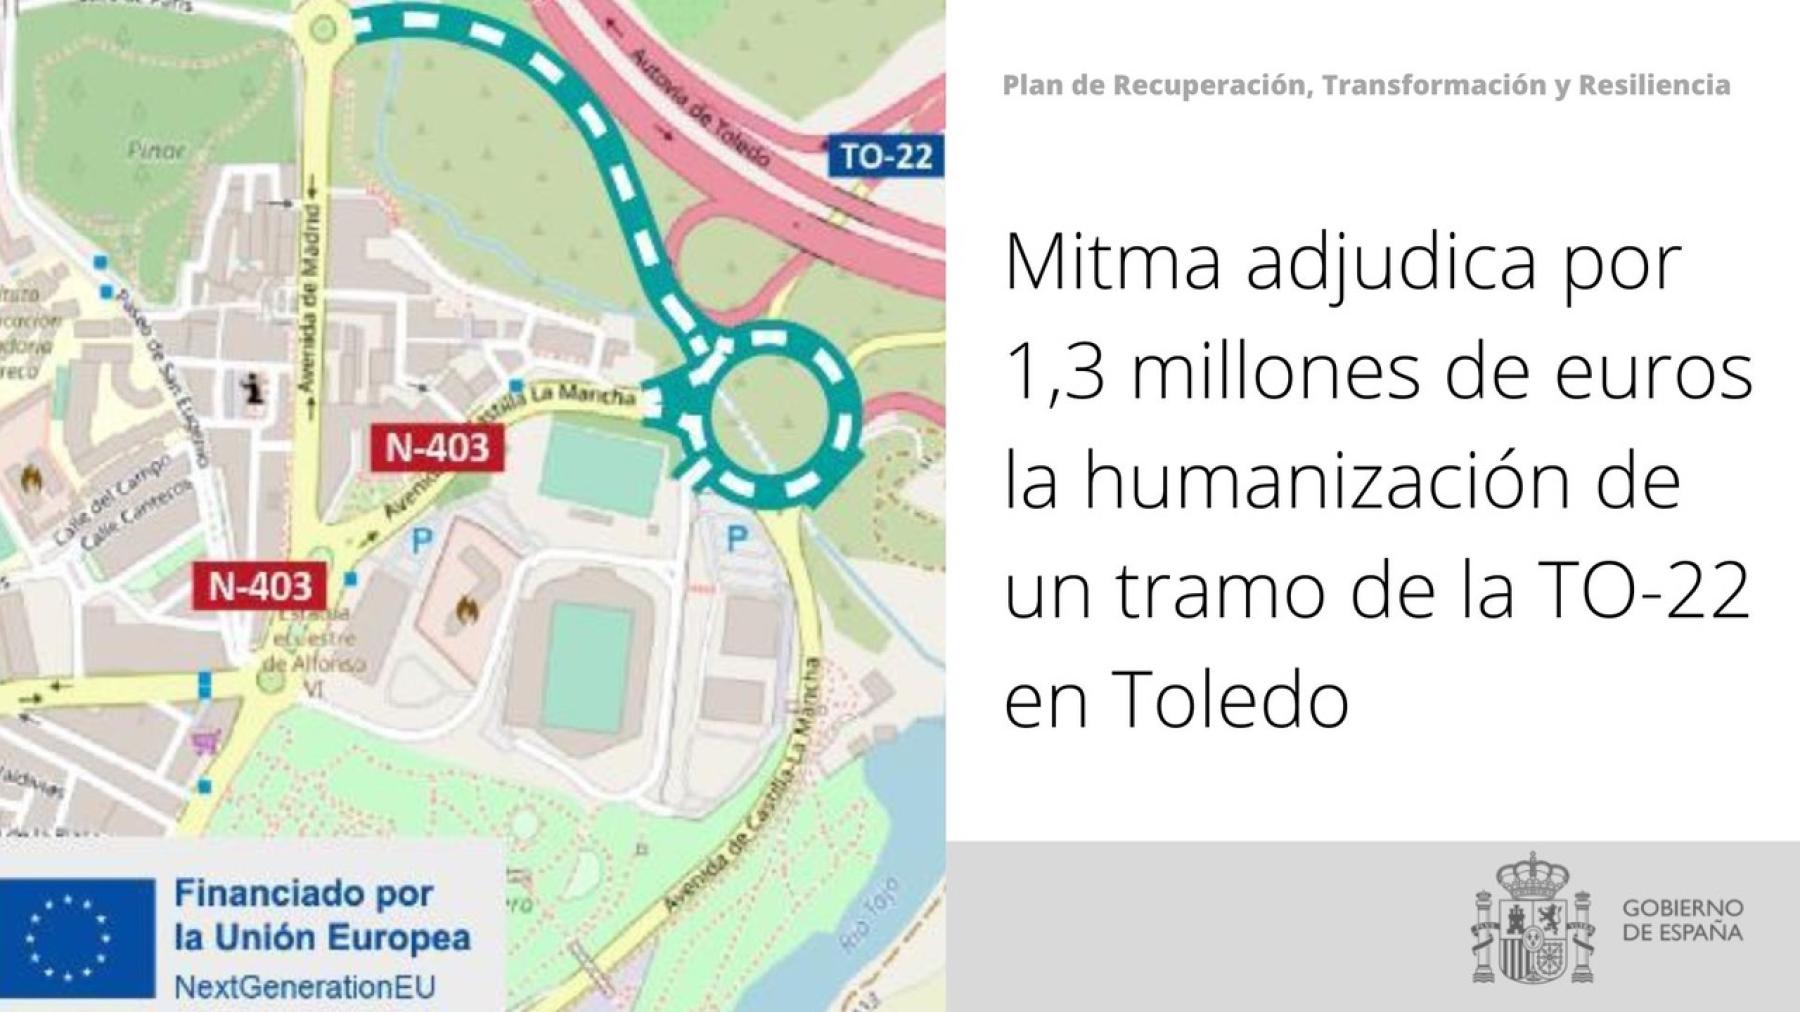 Mitma adjudica por 1,3 millones de euros la humanización de un tramo de la TO-22 en Toledo